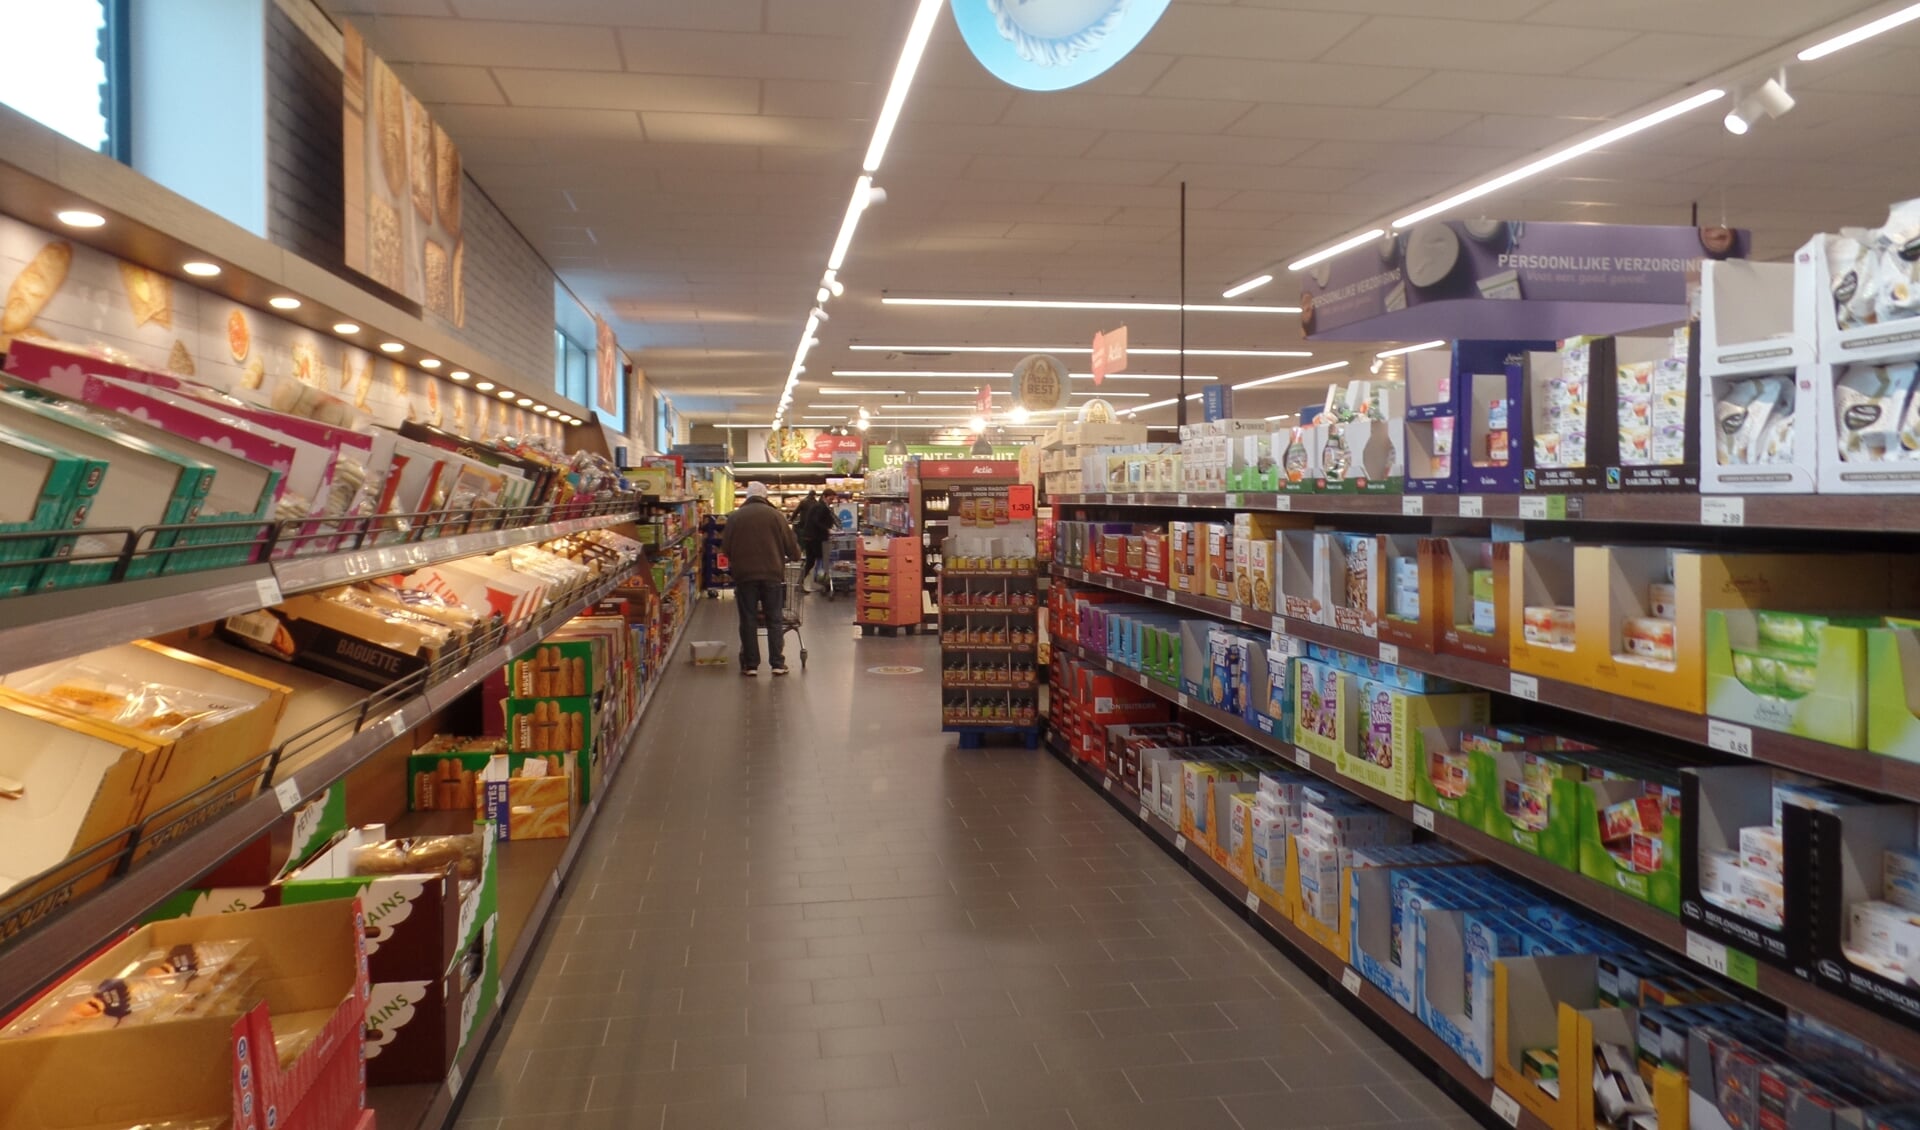 Wat direct opvalt in de nieuwe Aldi zijn de brede winkelpaden. Foto: Jan Hendriksen. 